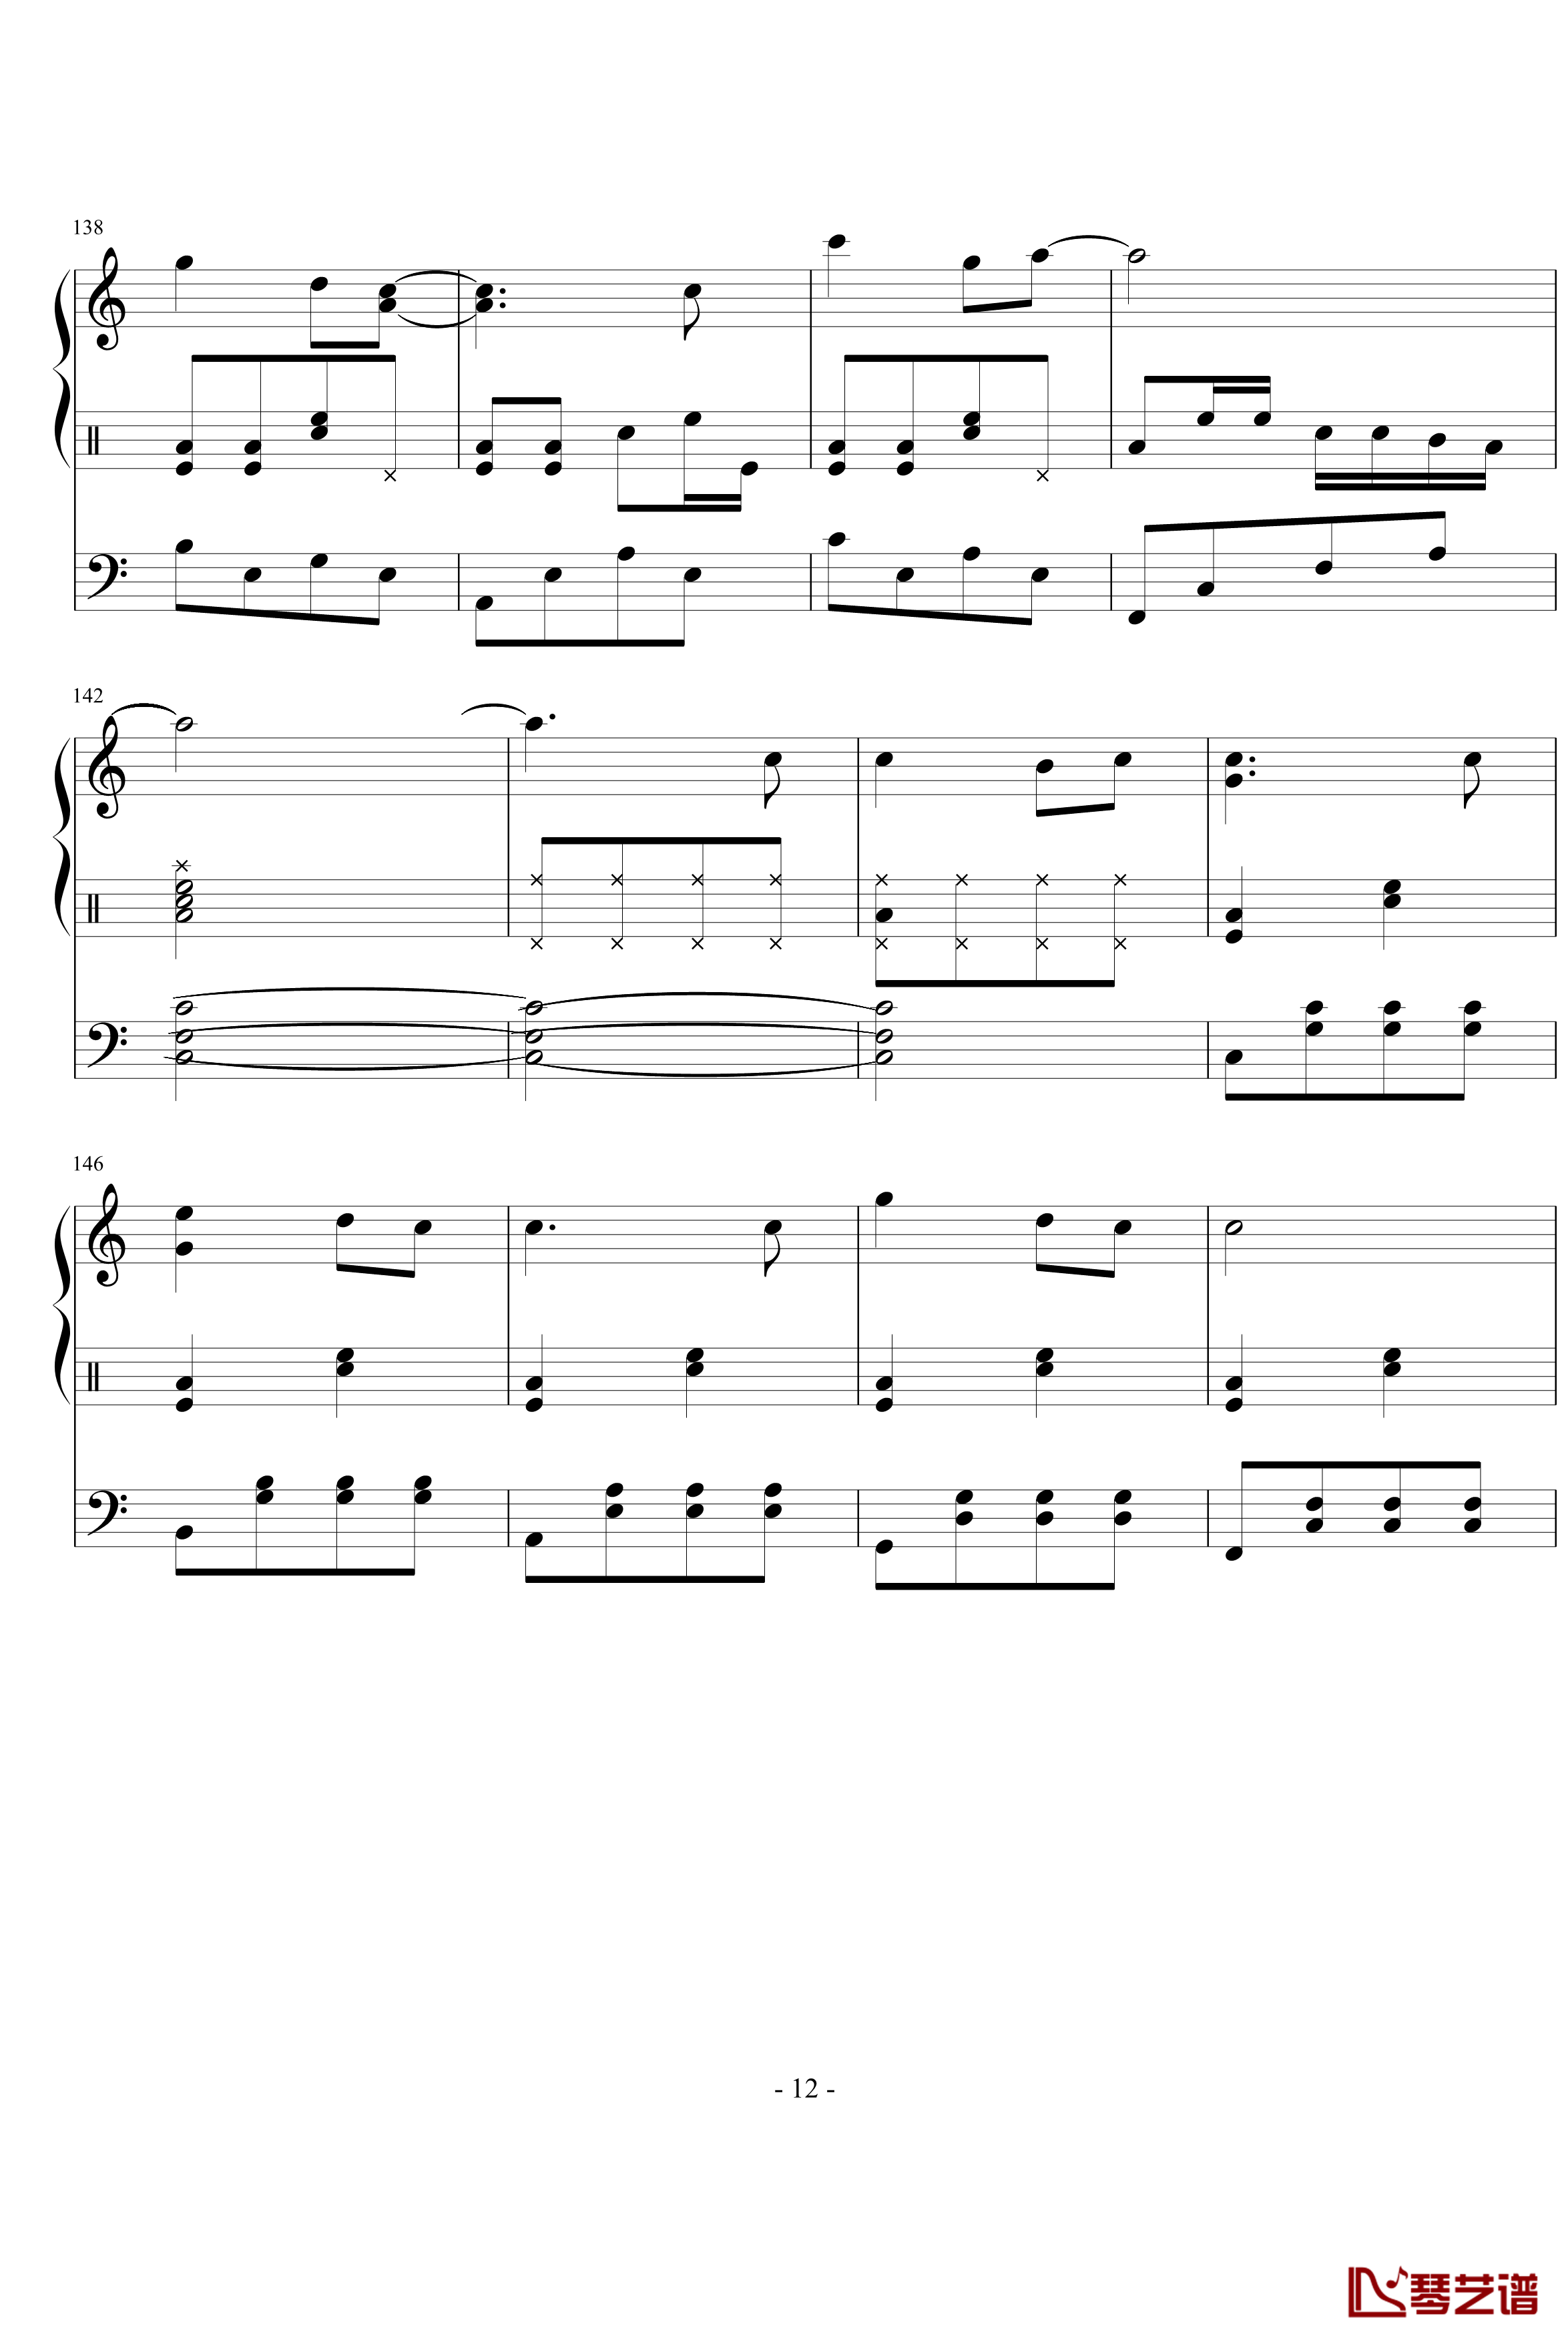 星月游乐园钢琴谱-199086hxy12